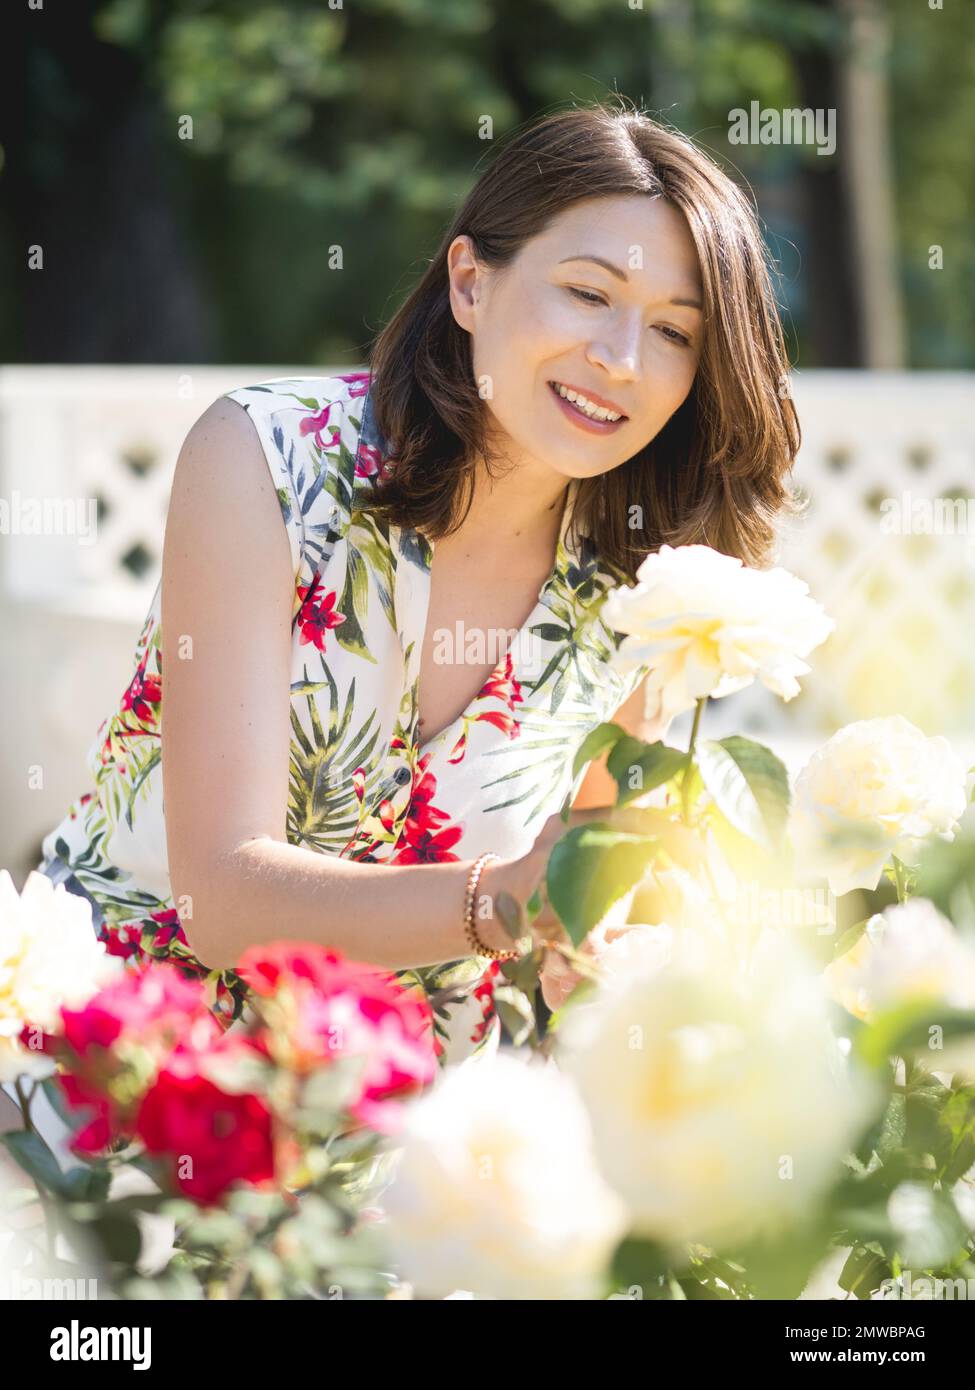 Eine weiße Frau bewundert blühende Rosen im öffentlichen Park. Sommerliche Stimmung. Tropische Pflanzen und Blumen blühen im Garten. Stockfoto